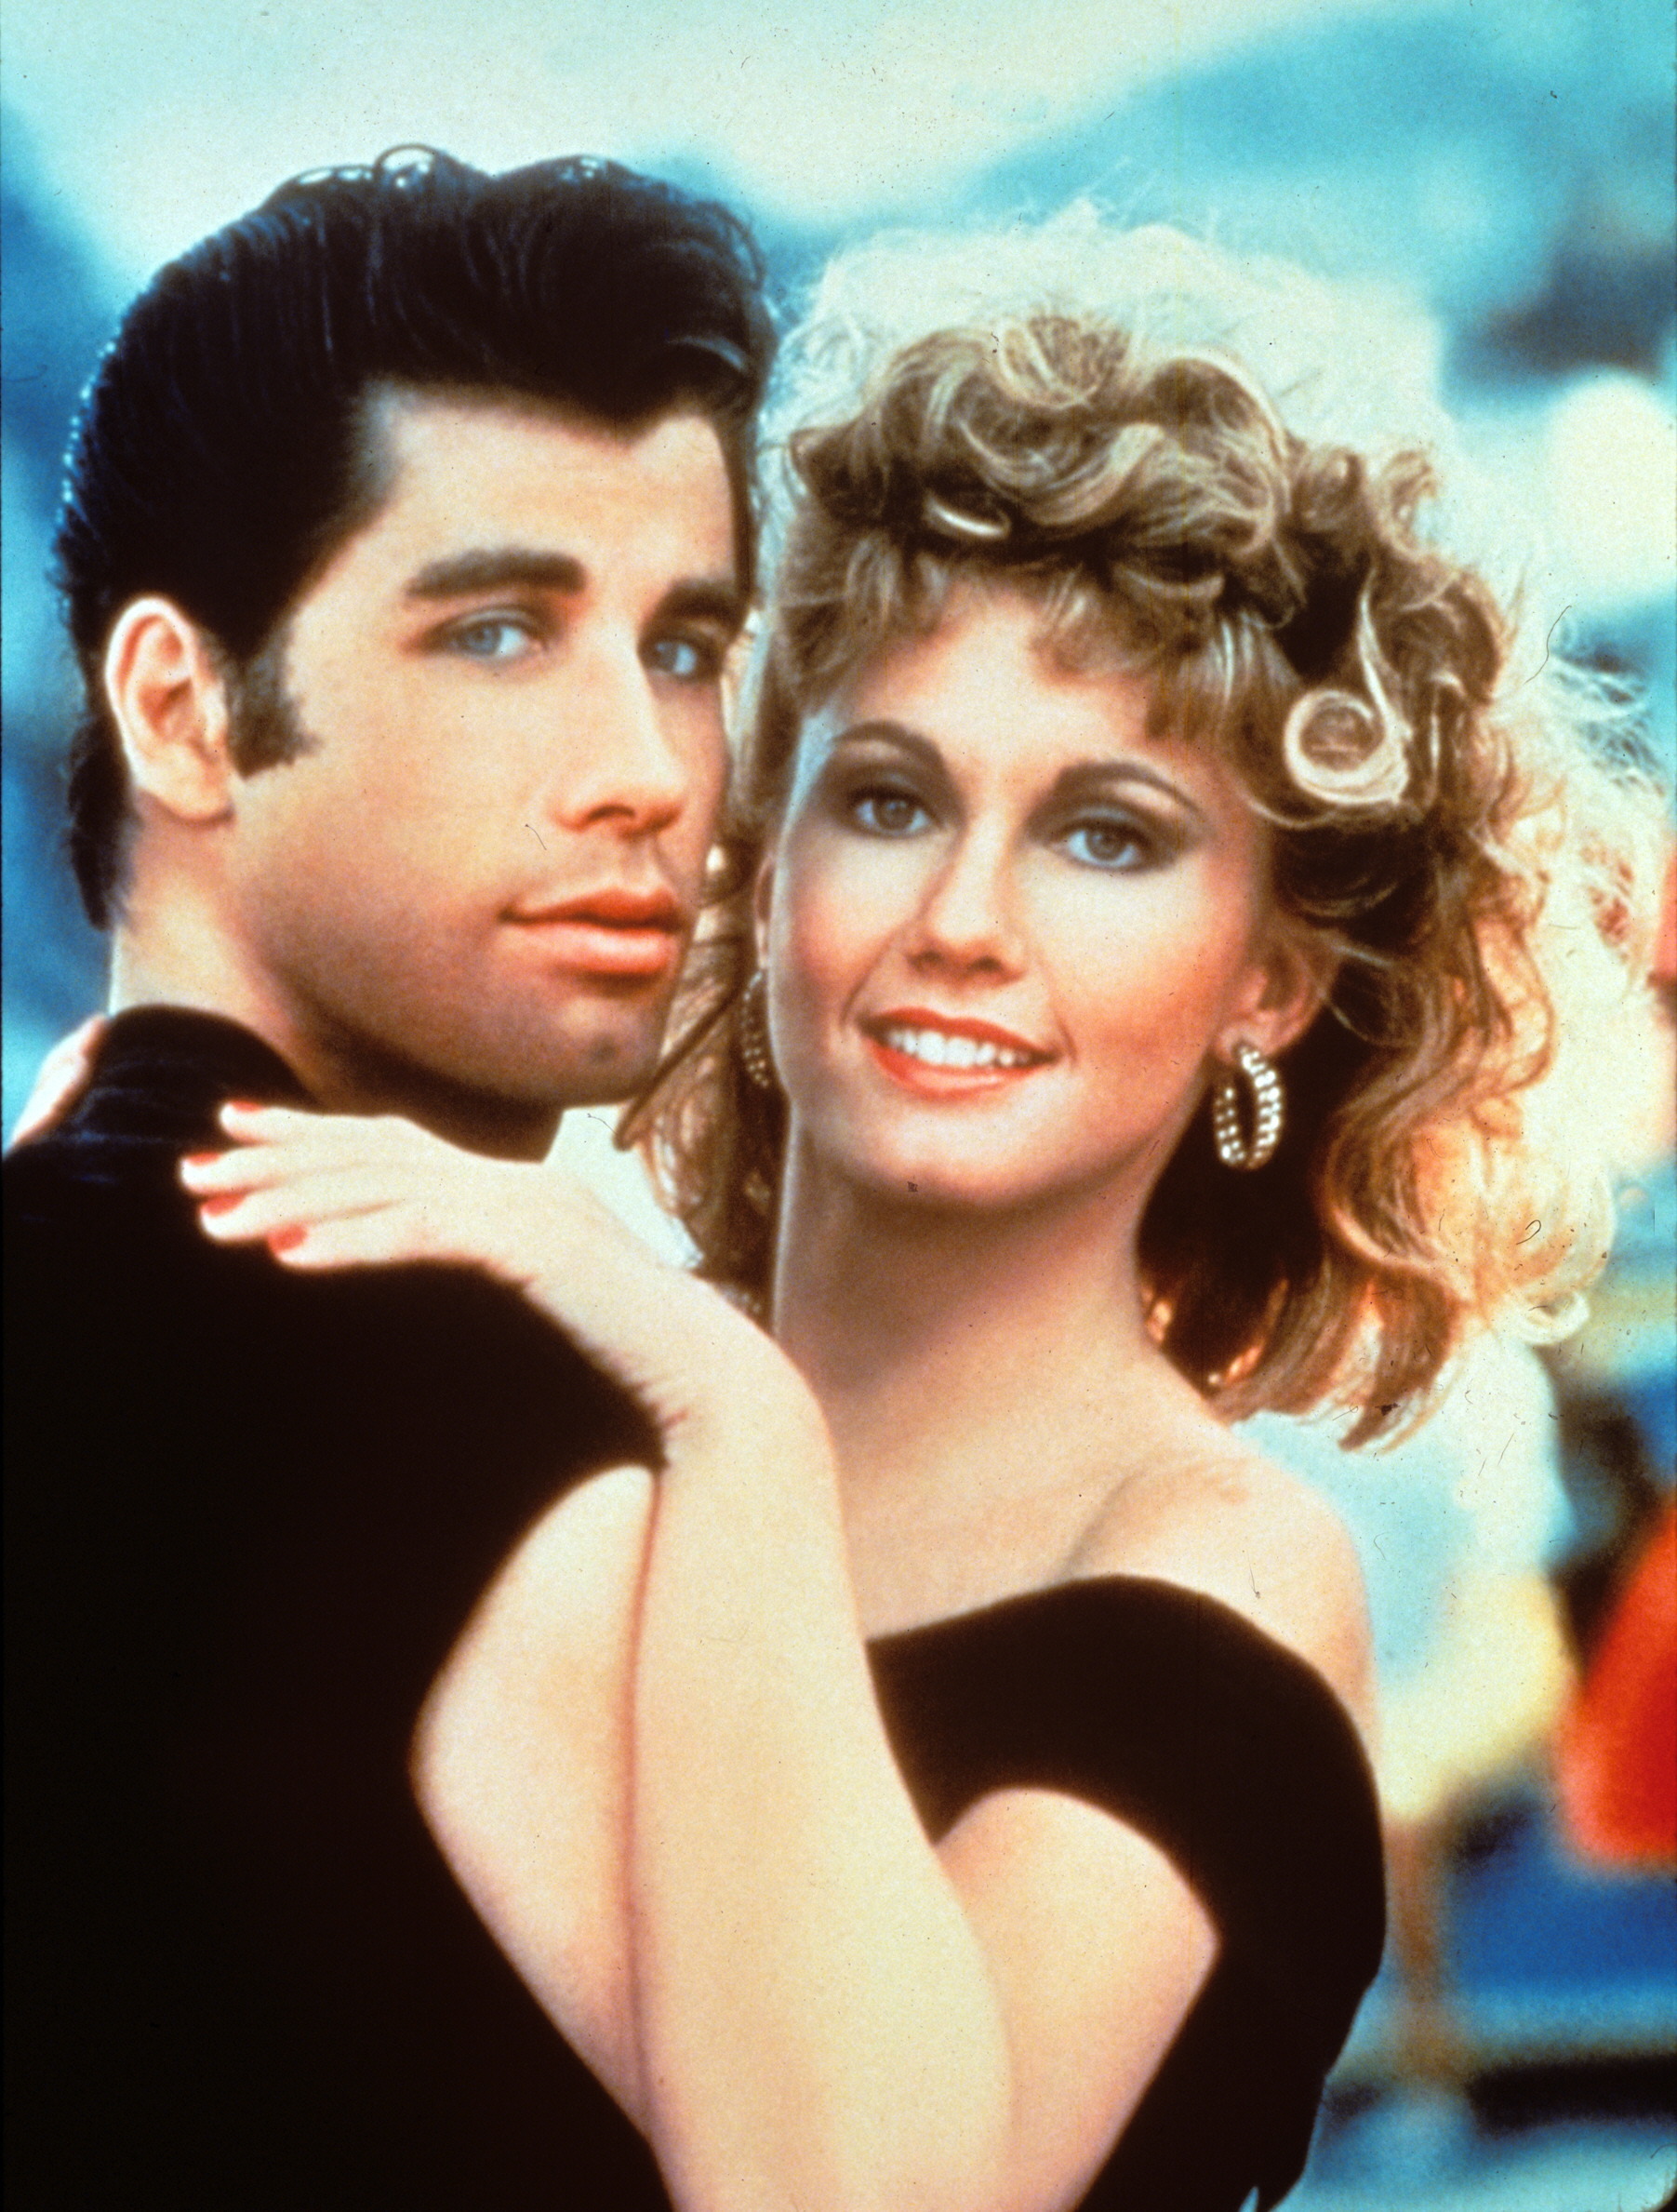 Imagen de archivo de John Travolta (i) y Olivia Newton John, durante el rodaje de la "Grease" (1978) (EFE)